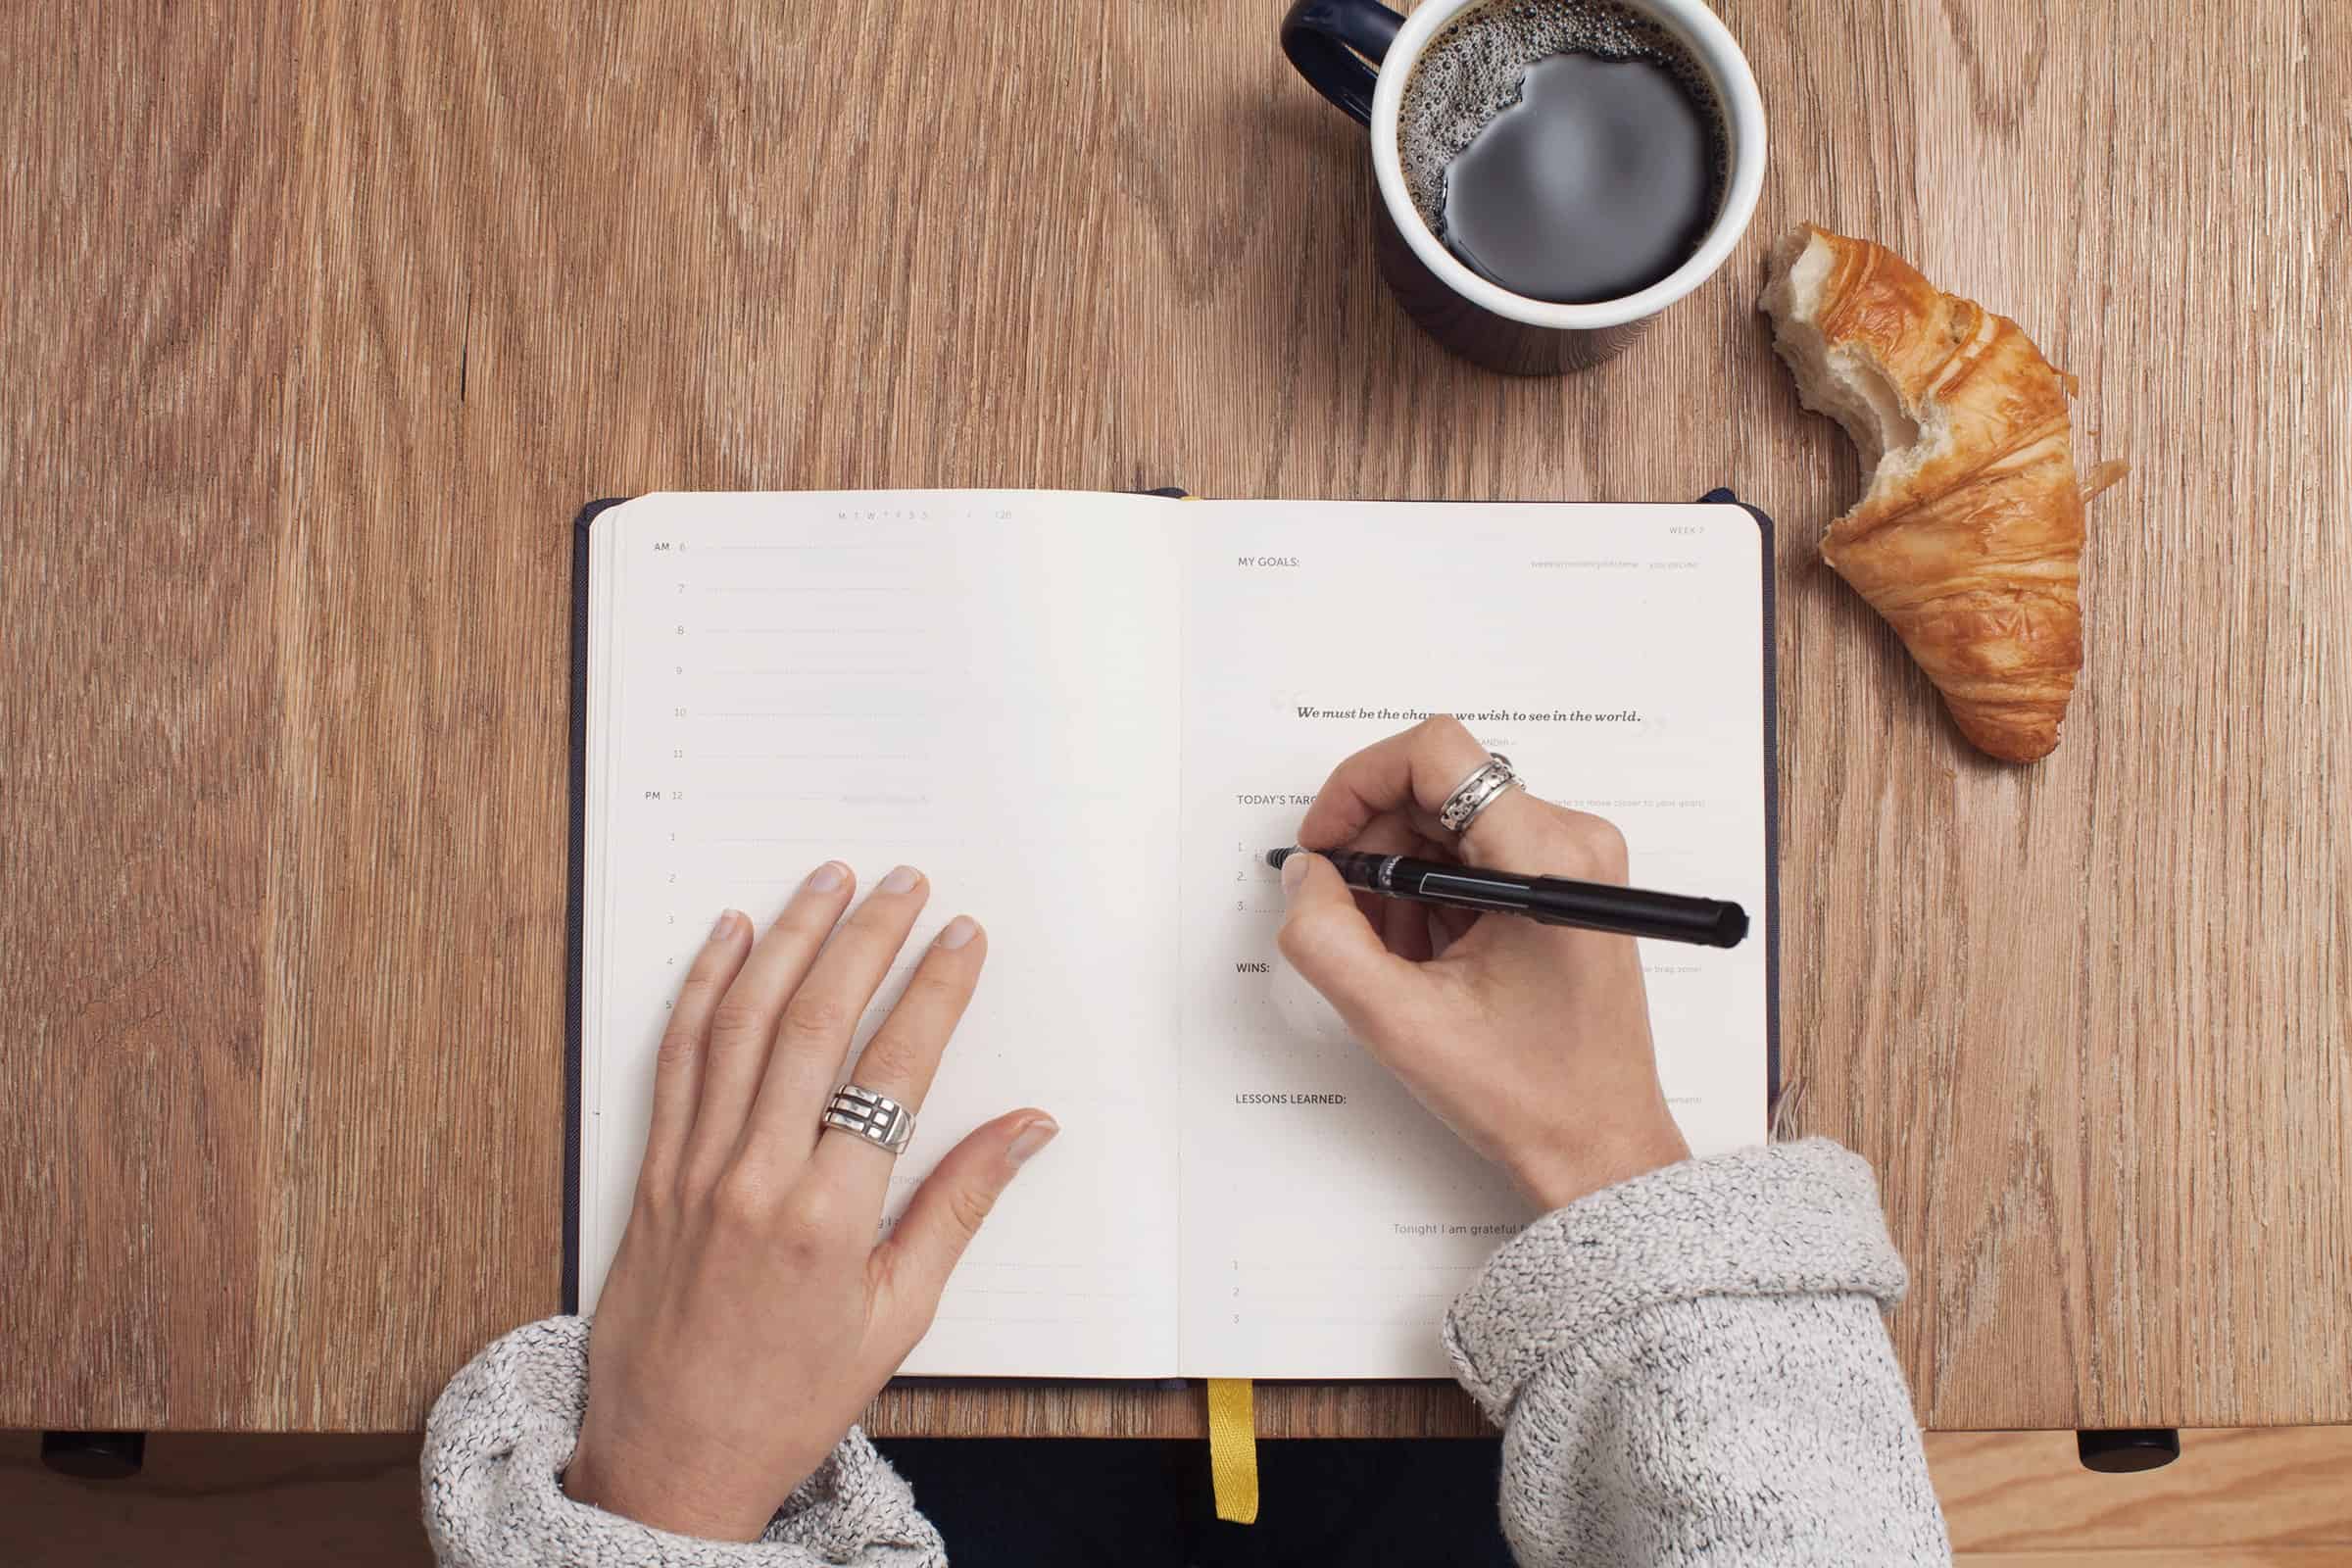 Checklist locatiebezoek evenementenlocatie - schrijven - pen en papier - koffie